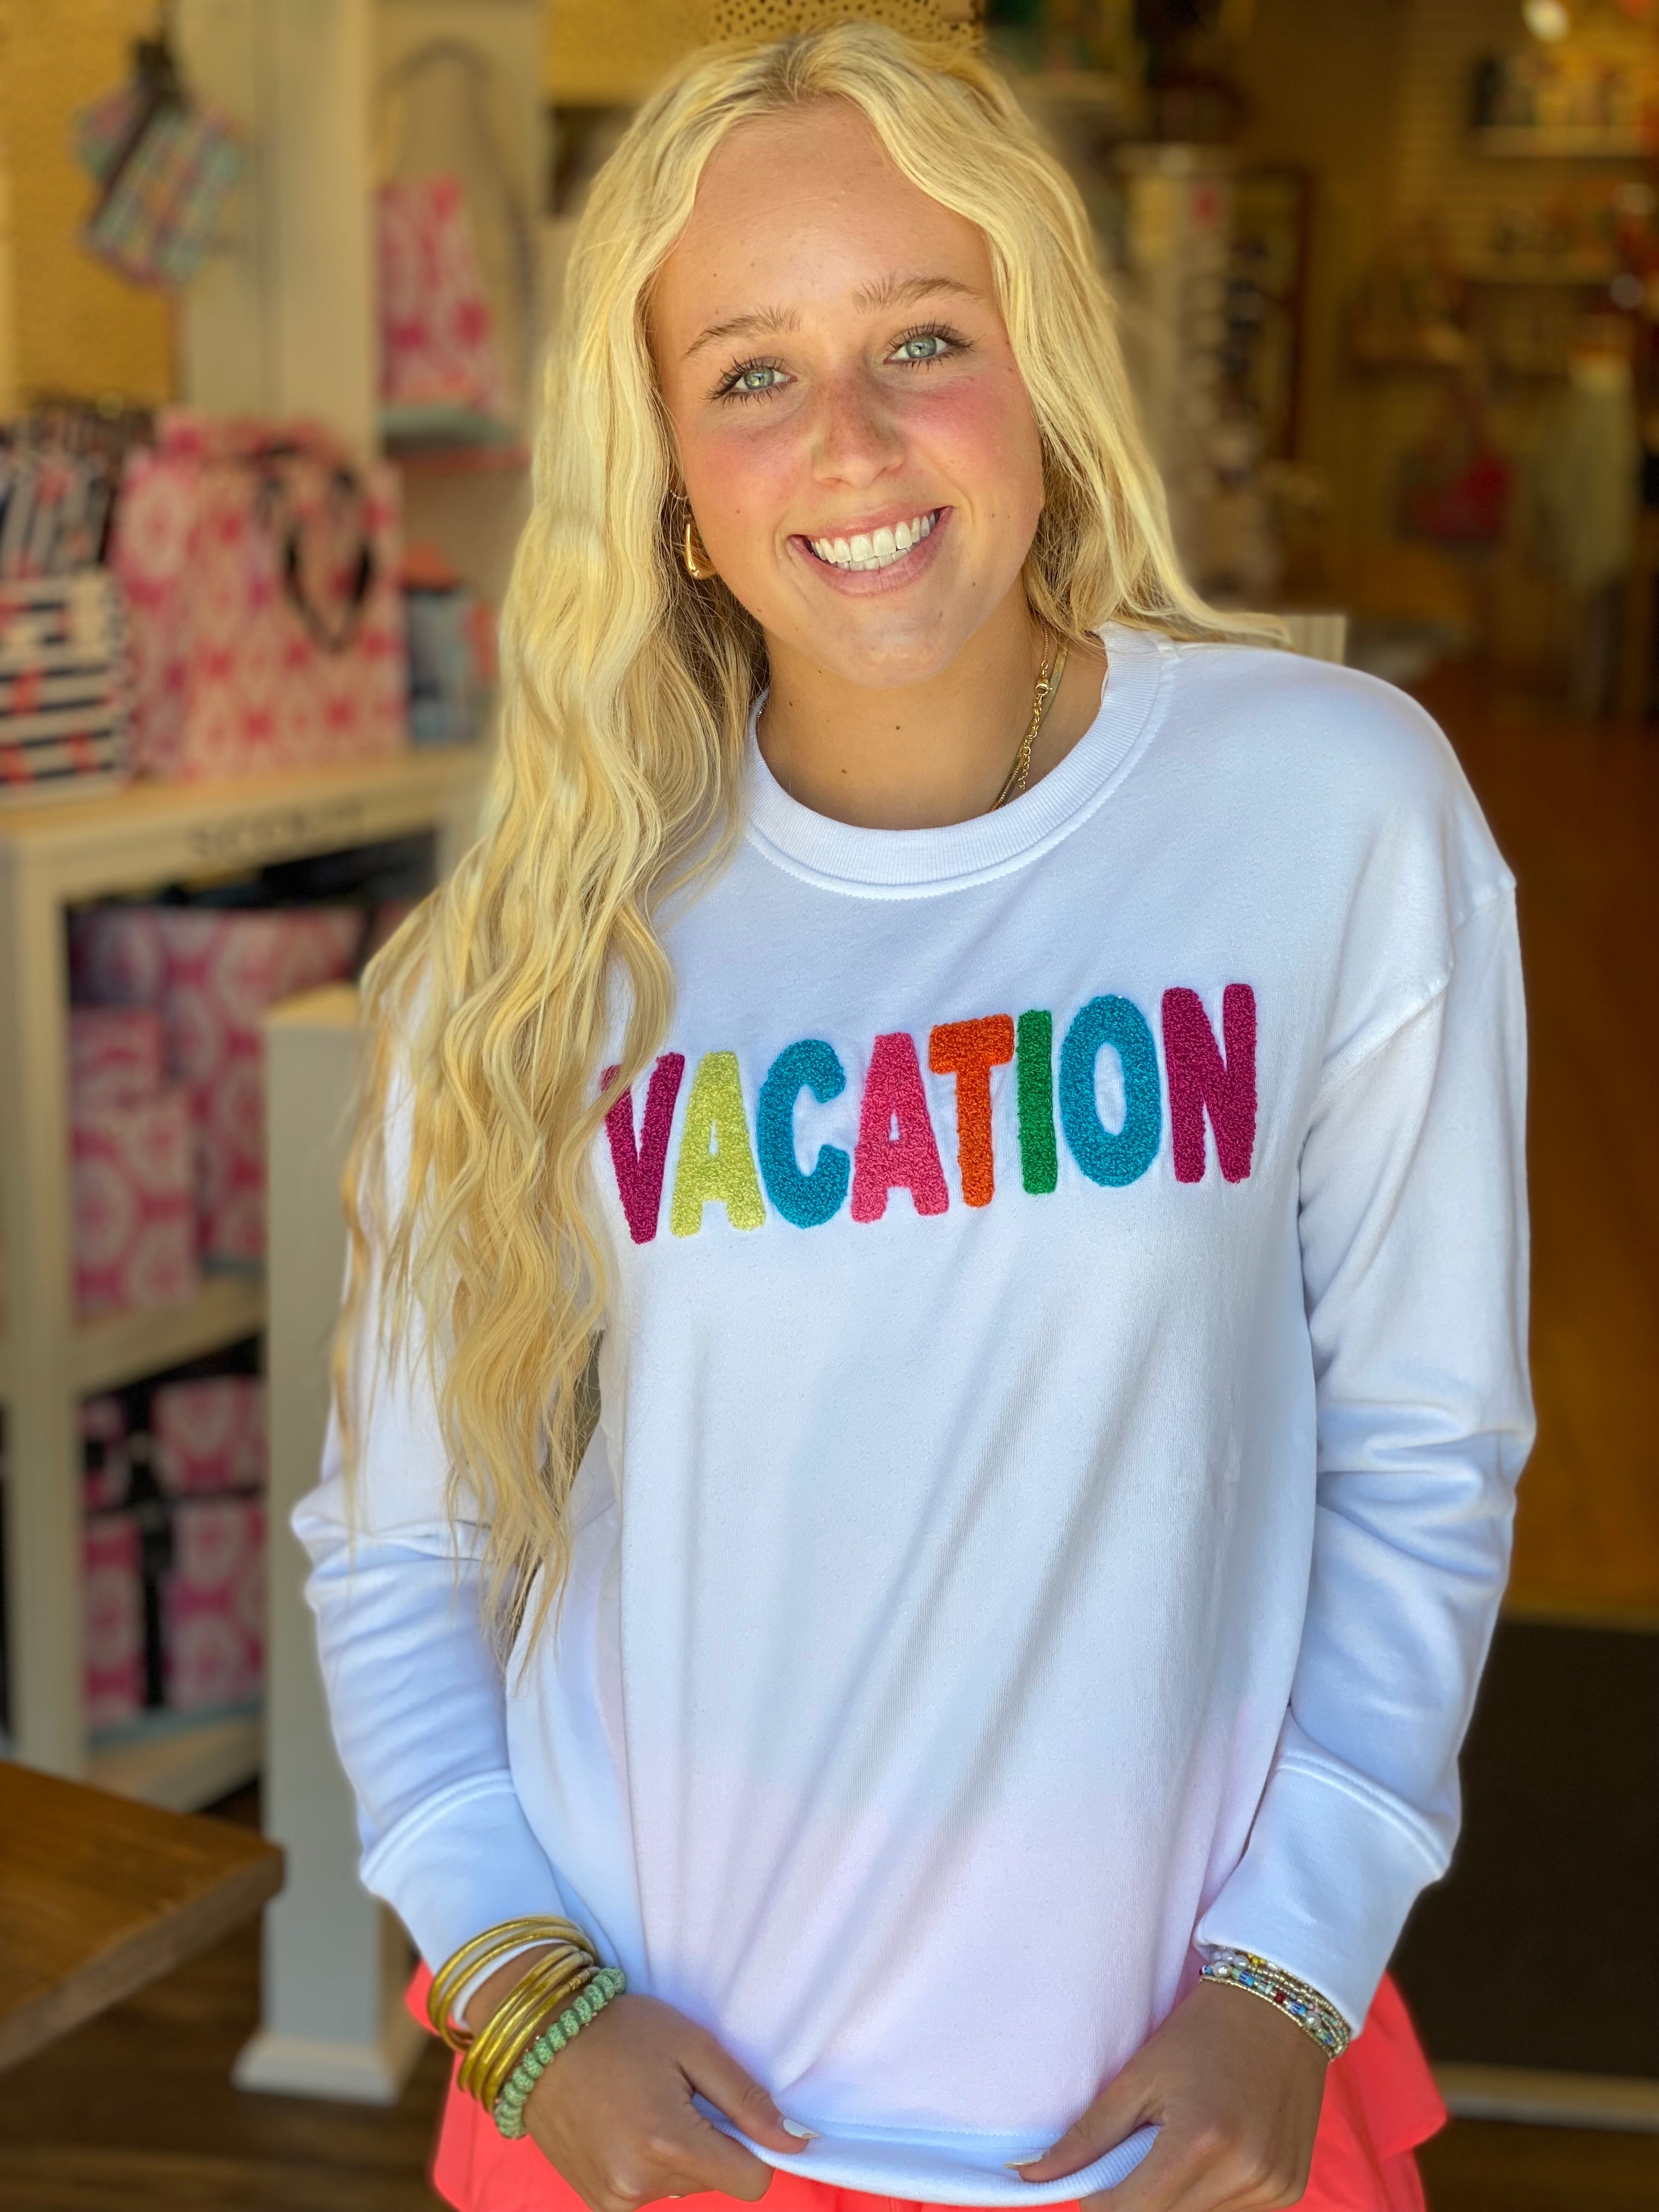 Shiraleah "Vacation" Sweatshirt